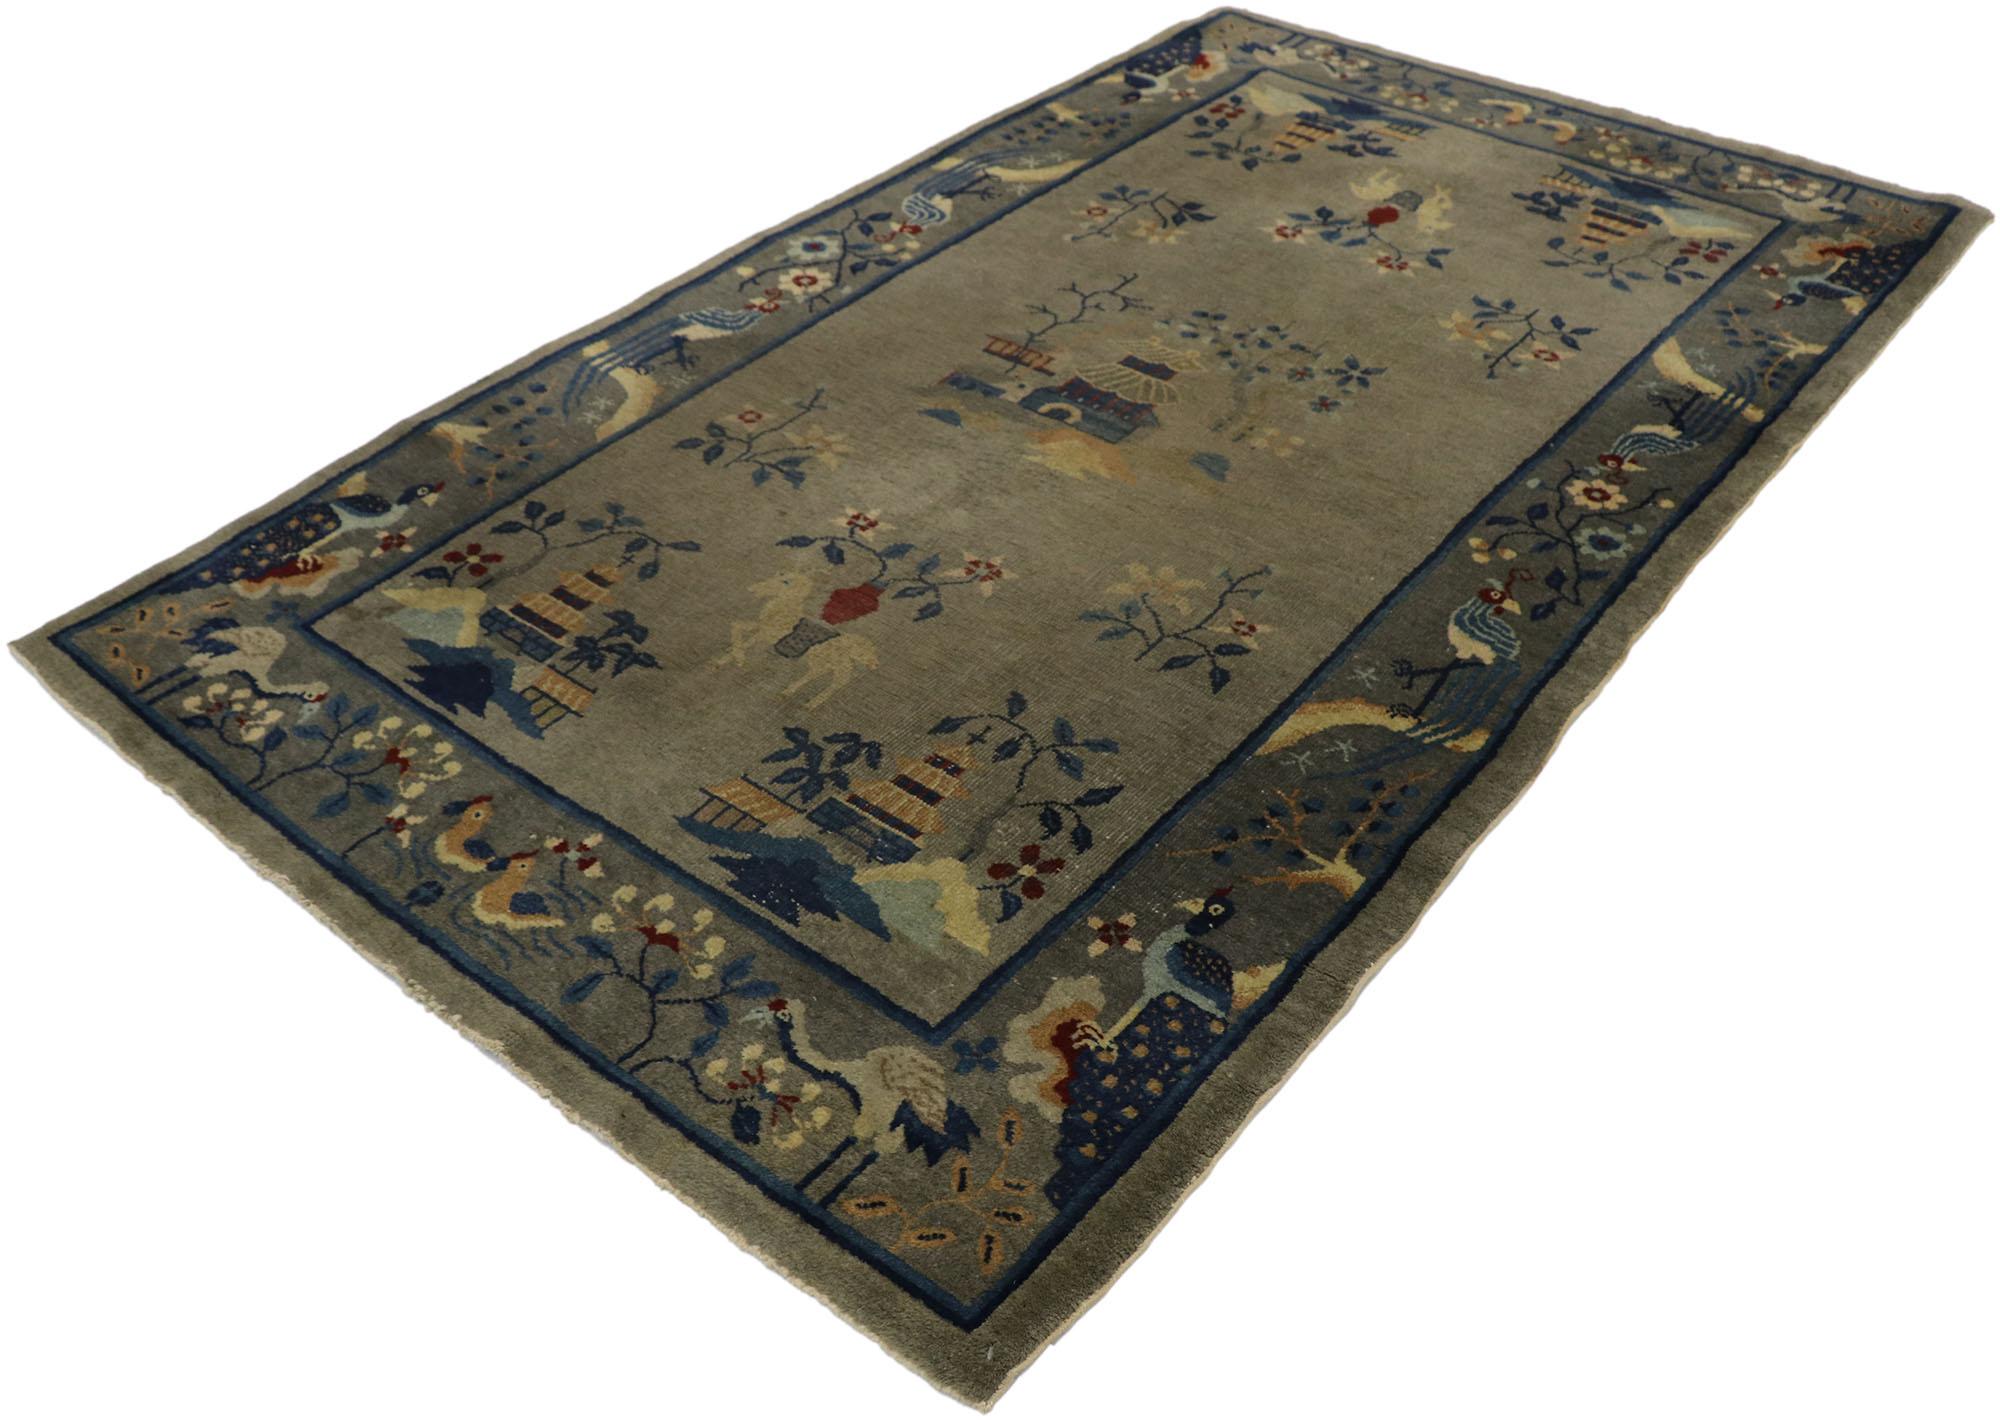 77557 Antiker chinesischer Art-Déco-Teppich mit malerischem Muster. Dieser handgeknüpfte, antike chinesische Art-Déco-Bildteppich aus Wolle zeigt eine Vielzahl traditioneller chinesischer Motive auf einem grauen, abgewetzten Feld. In der Mitte des